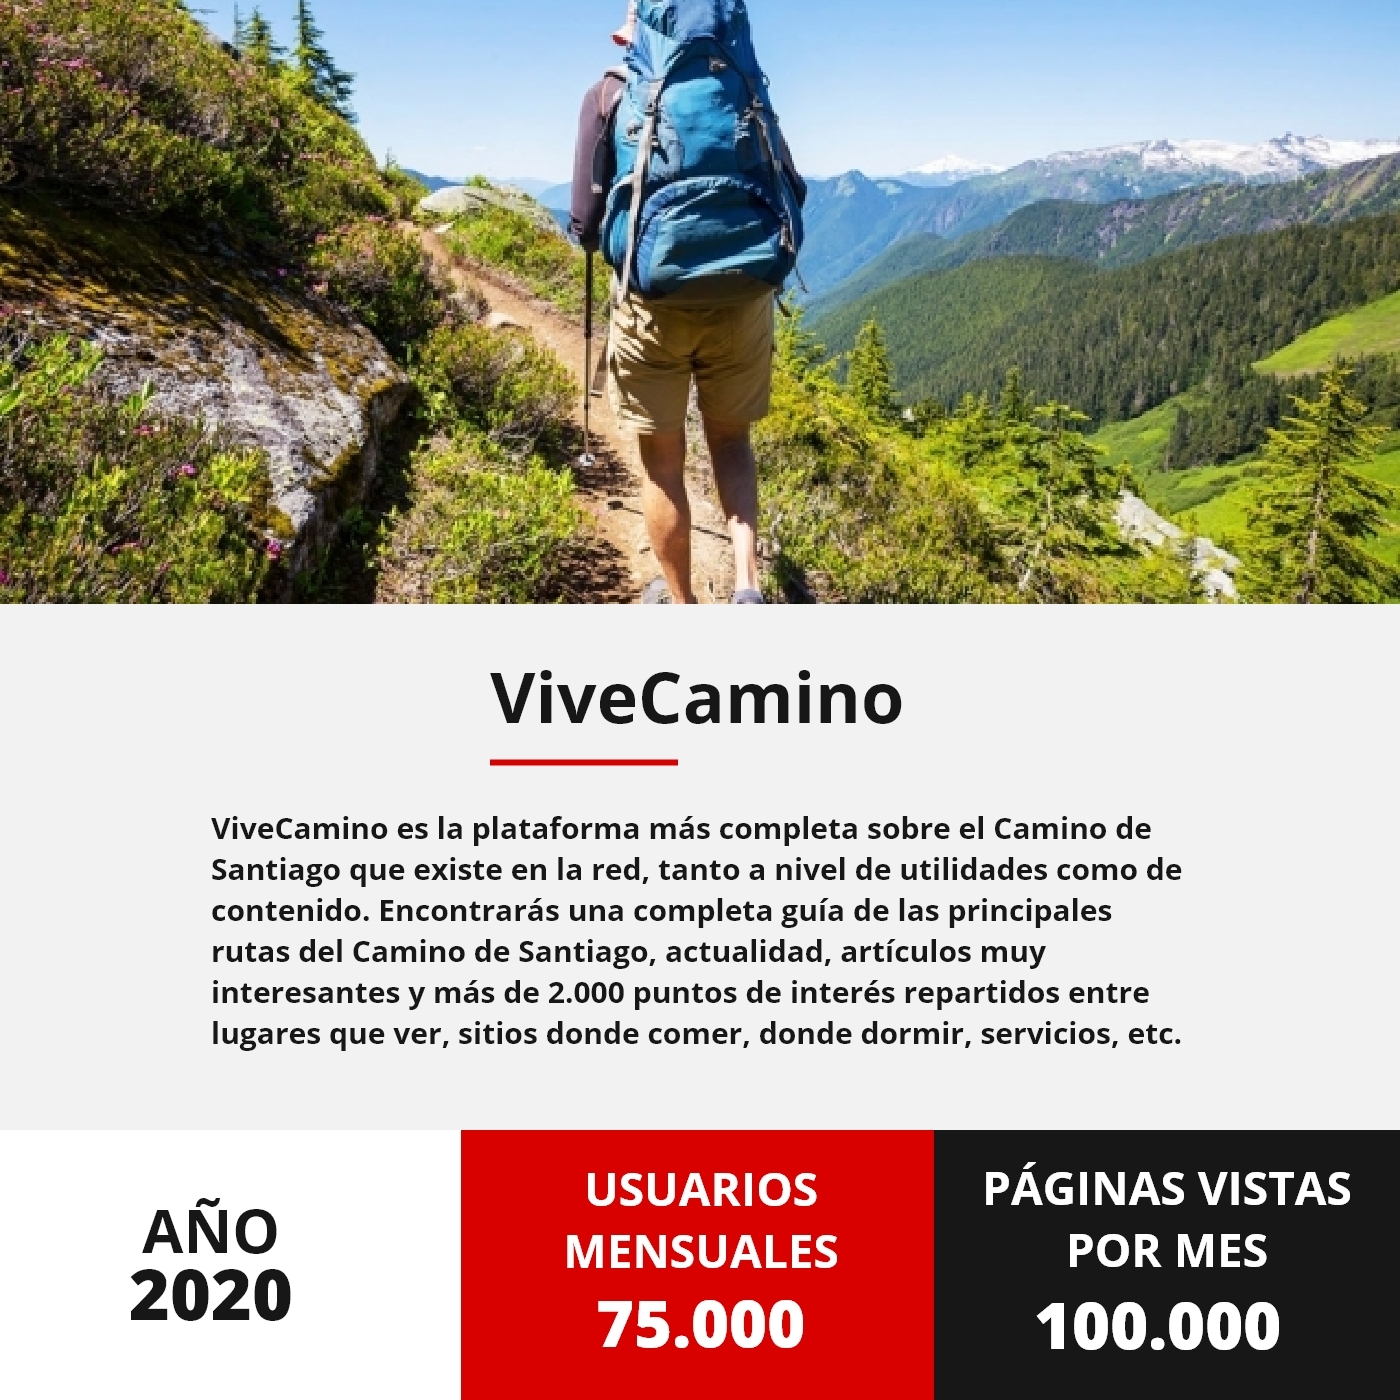 Vice Camino Stats